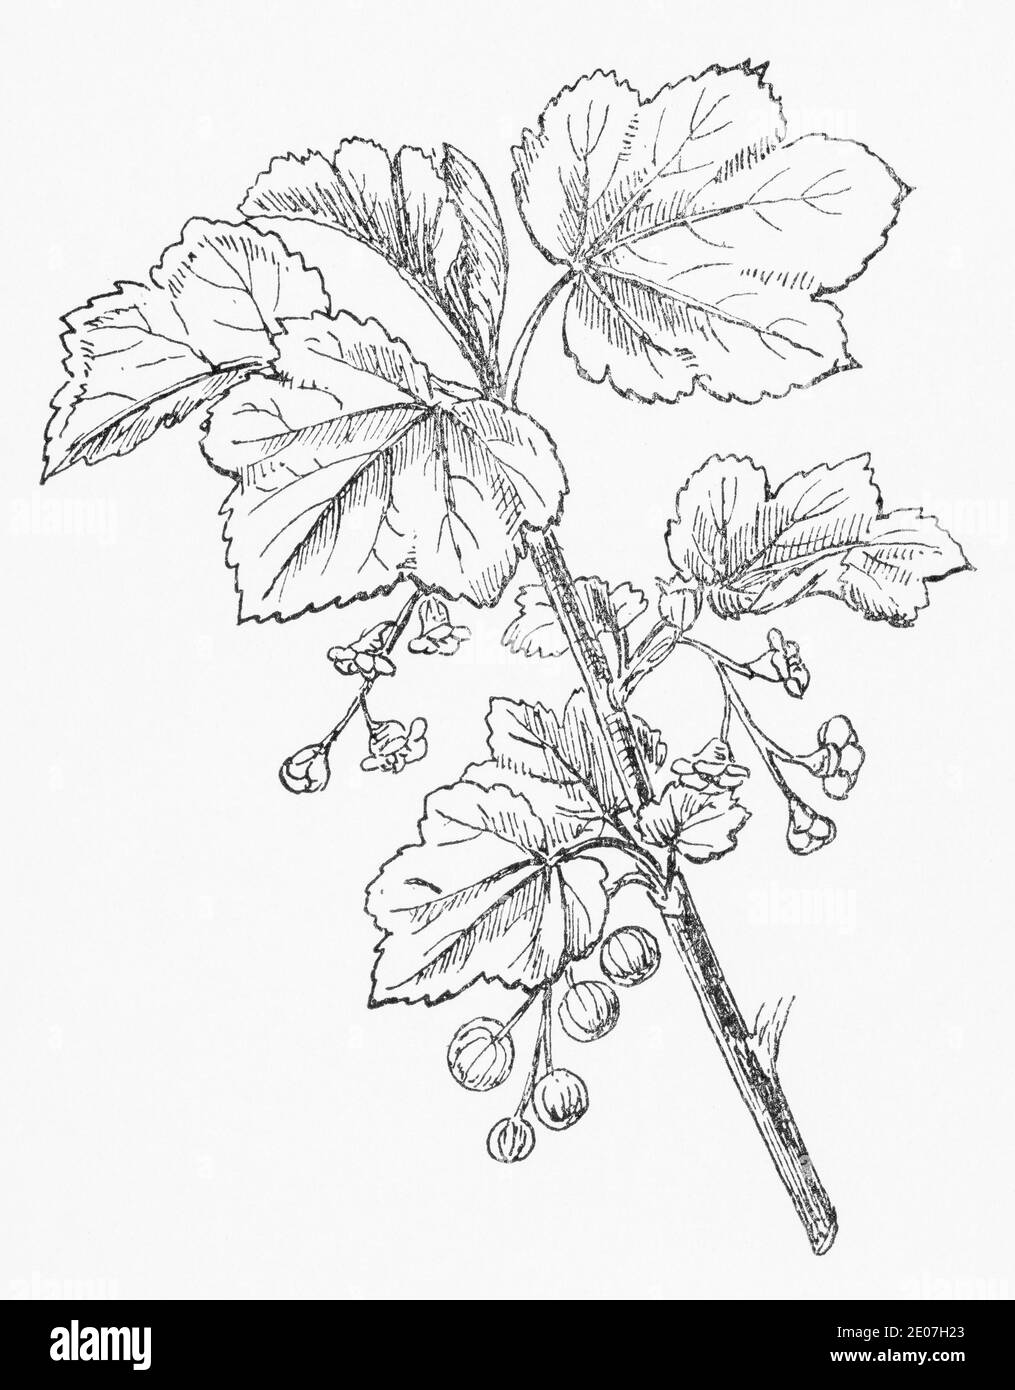 Antica illustrazione botanica incisione di ribes rosso, ribes rosso / Ribes rubrum. Pianta di erbe medicinali tradizionali. Vedere Note Foto Stock